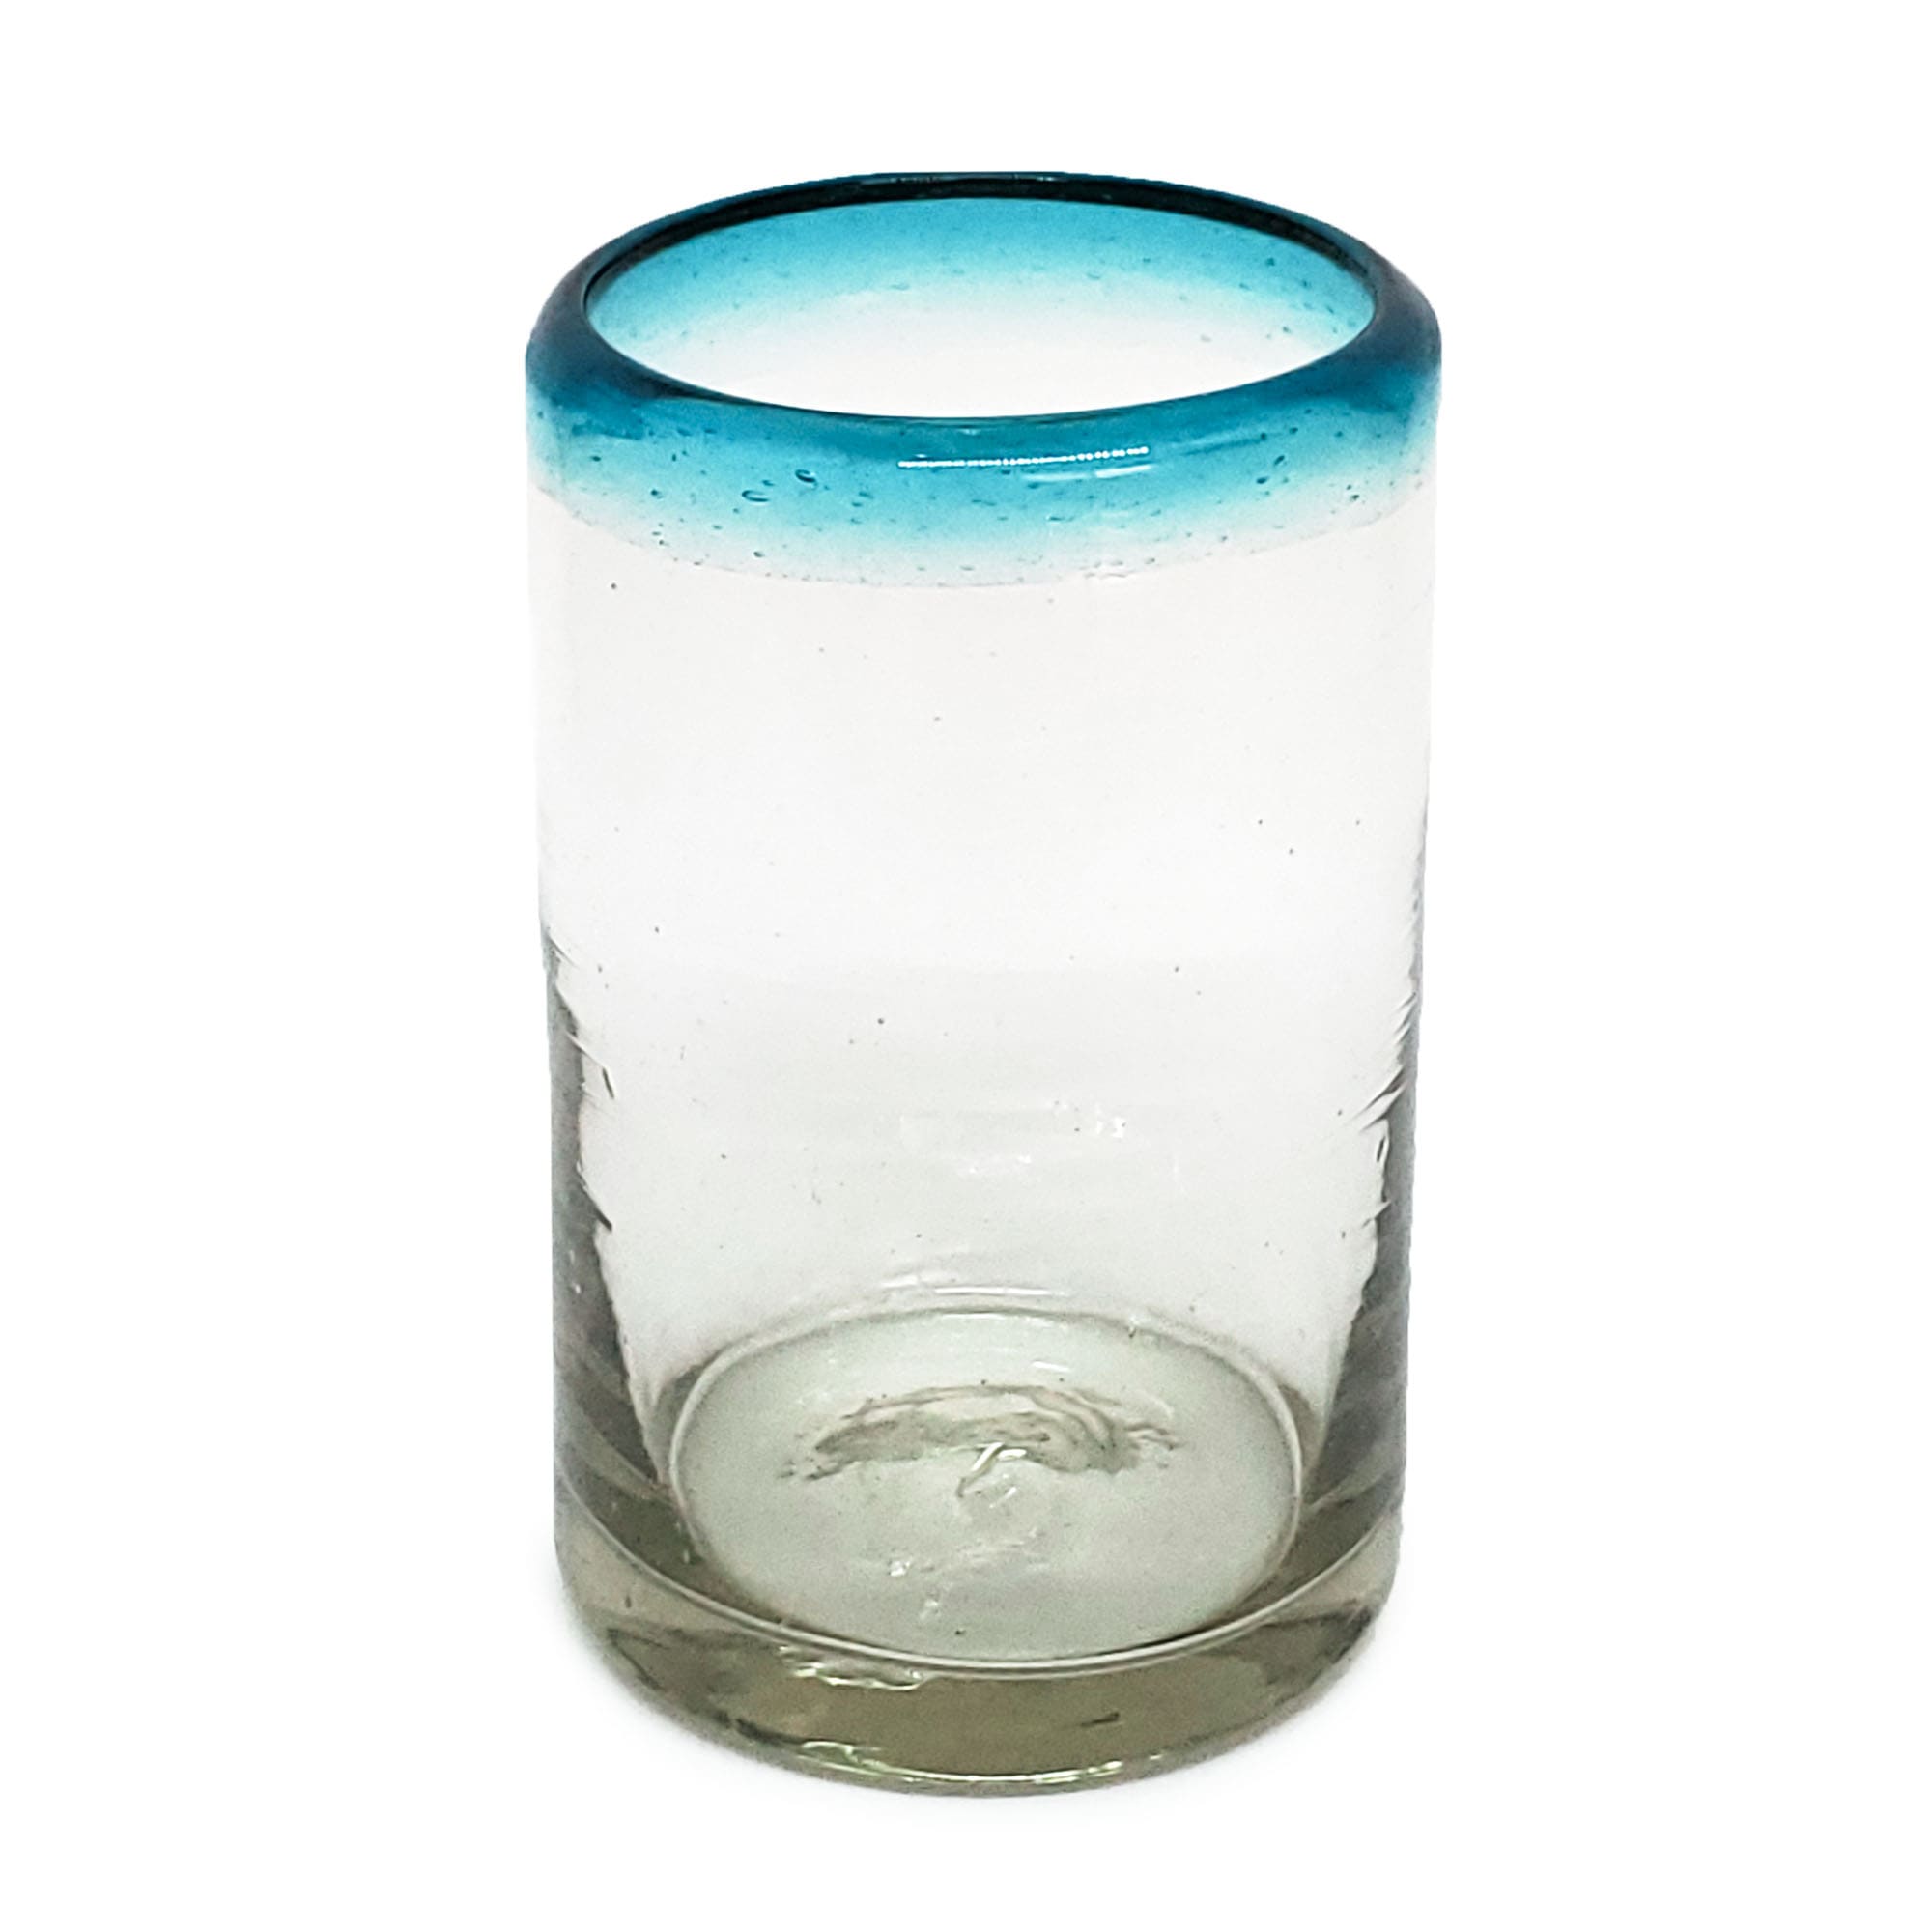 MEXICAN GLASSWARE / Aqua Blue Rim 9 oz Juice Glasses (set of 6)